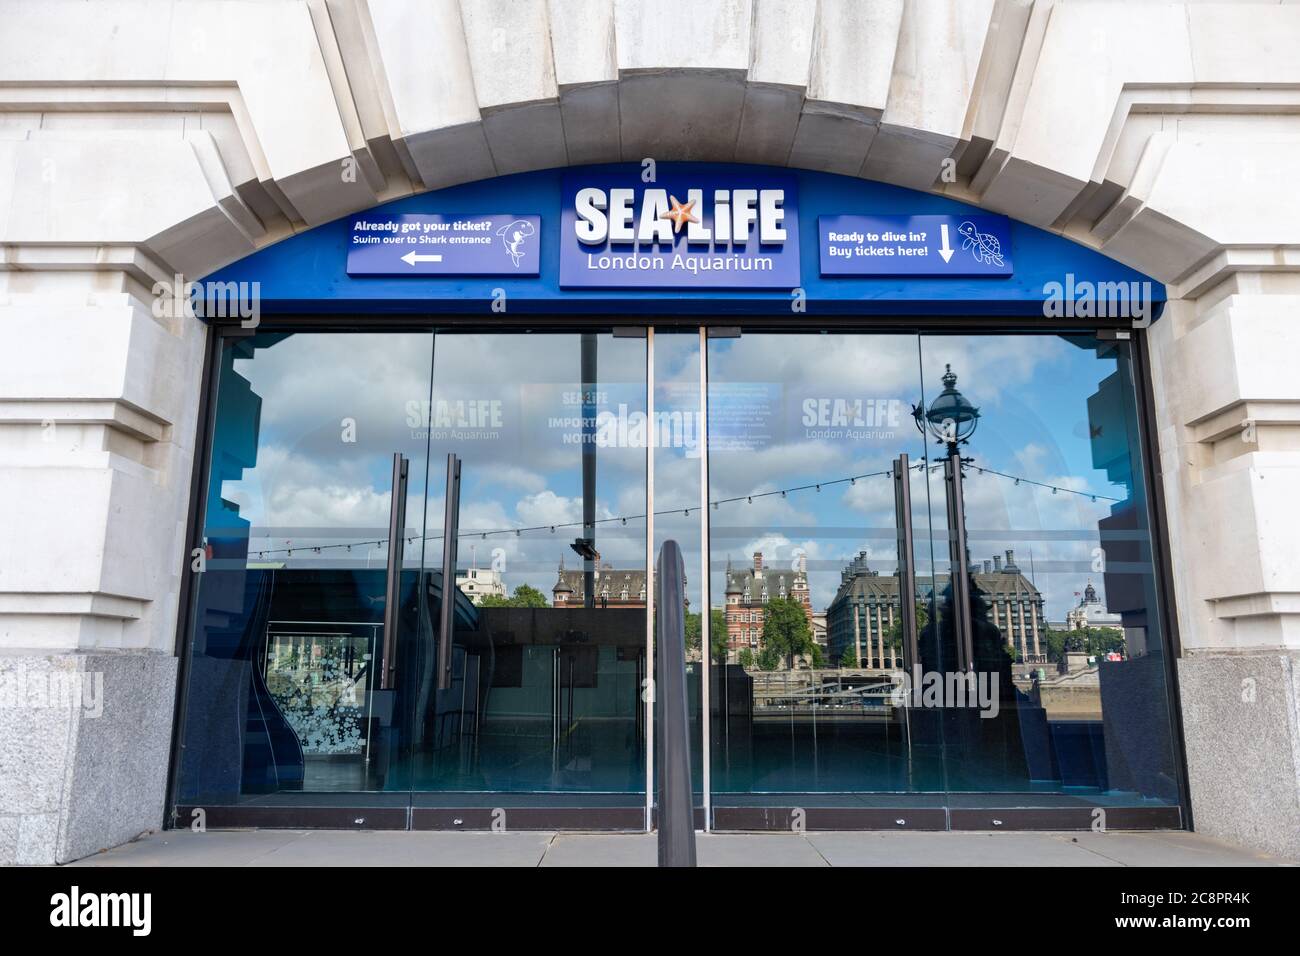 Le Sea Life London Aquarium est situé dans le County Hall, sur la rive sud de la Tamise. Banque D'Images